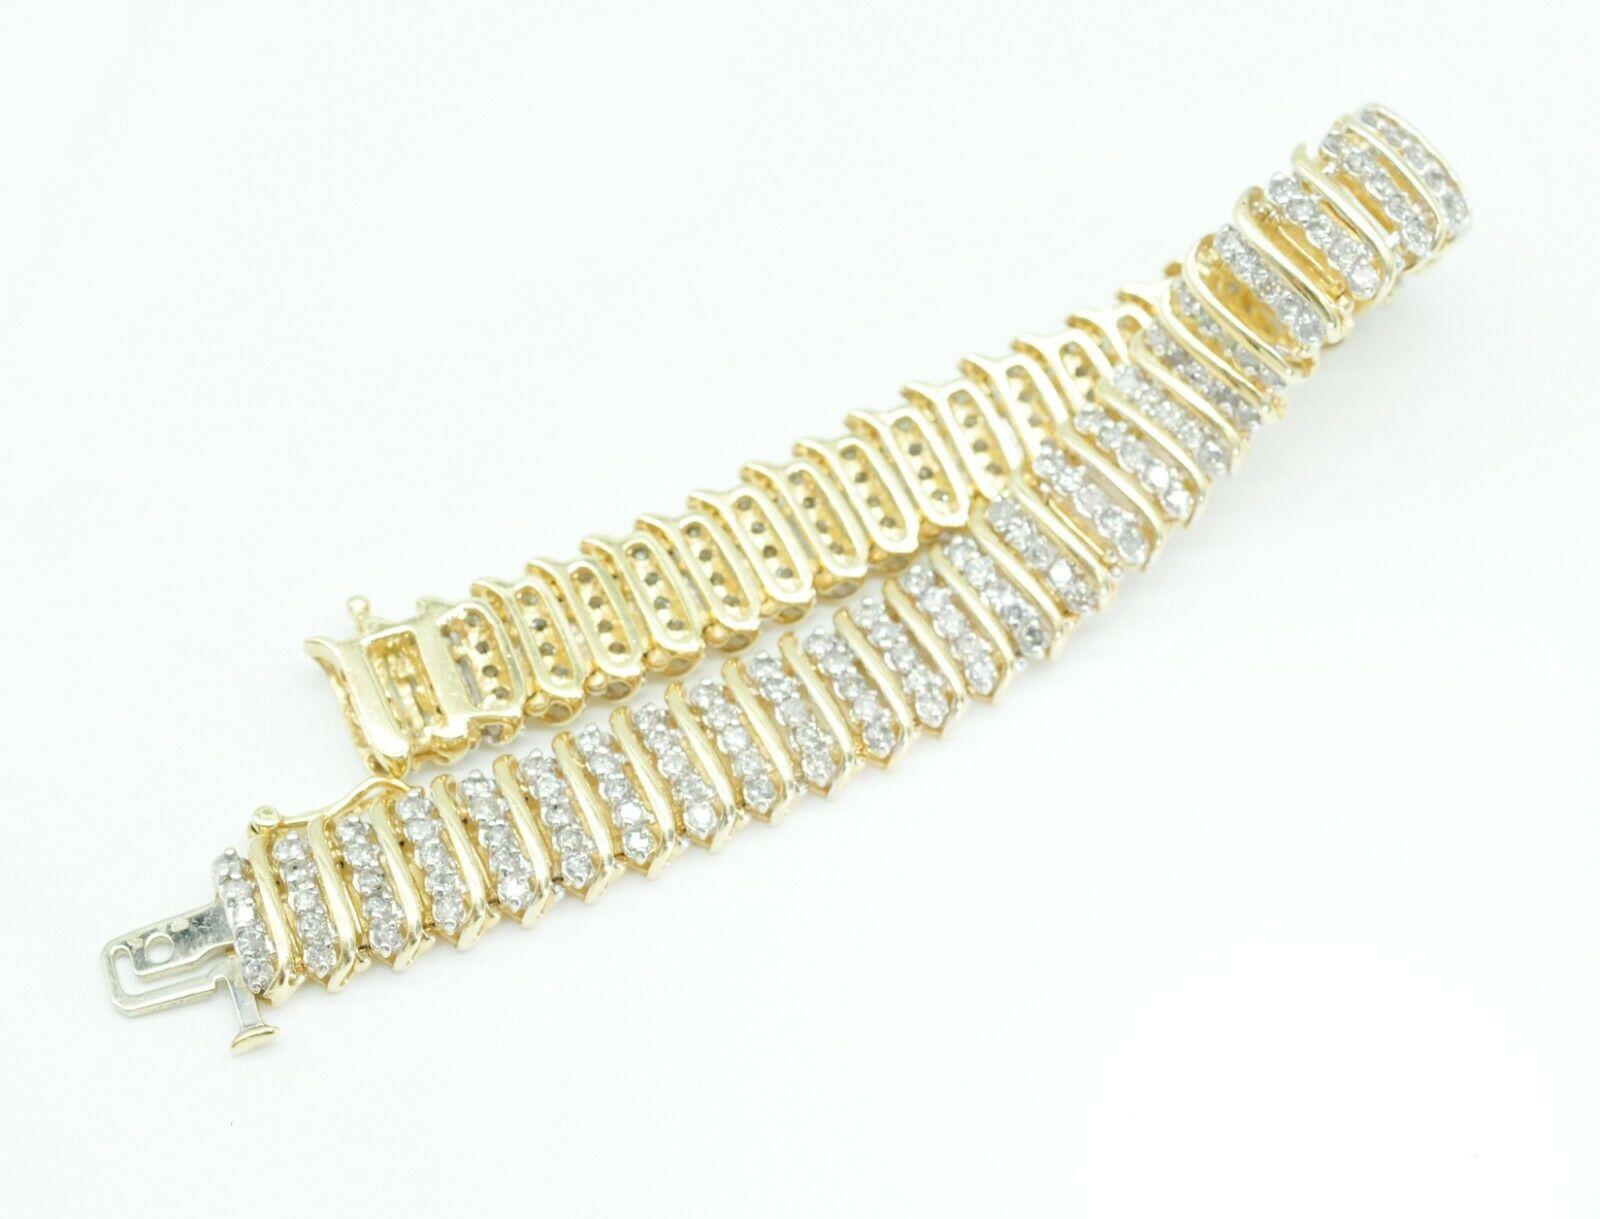 Contemporary 10k Yellow Gold 4 Row Diamond Tennis Bracelet